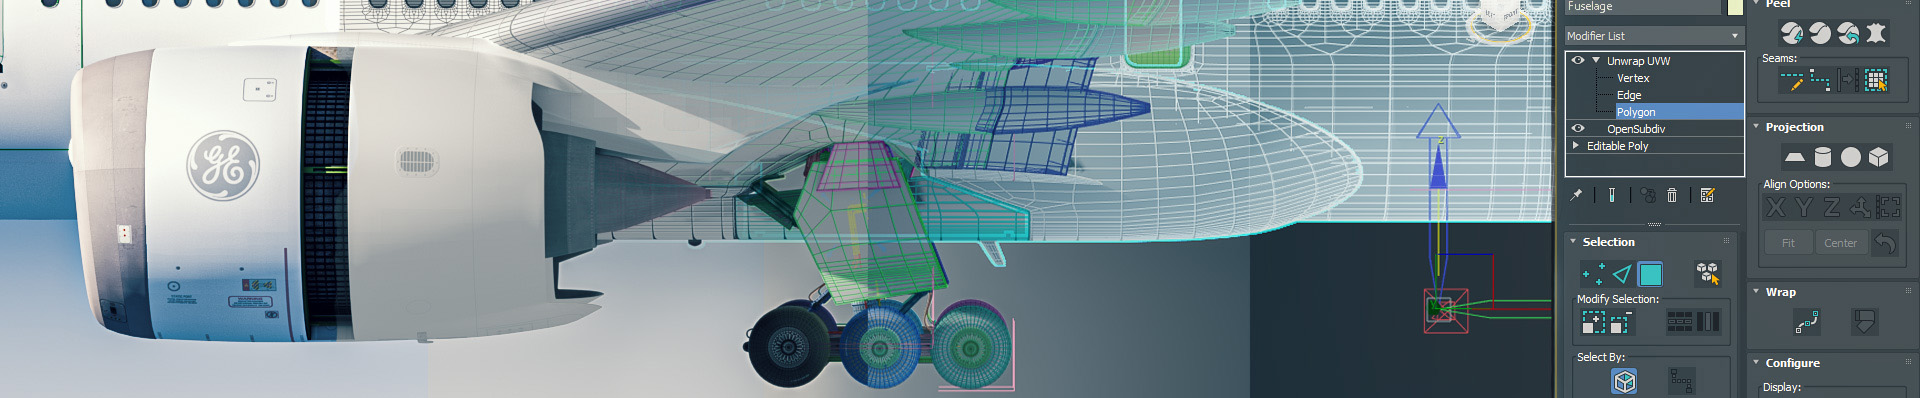 CloseUp Seitenansicht eines Flugzeug-Renderings, welches nach rechts hin in eine Wireframe Darstellung übergeht.